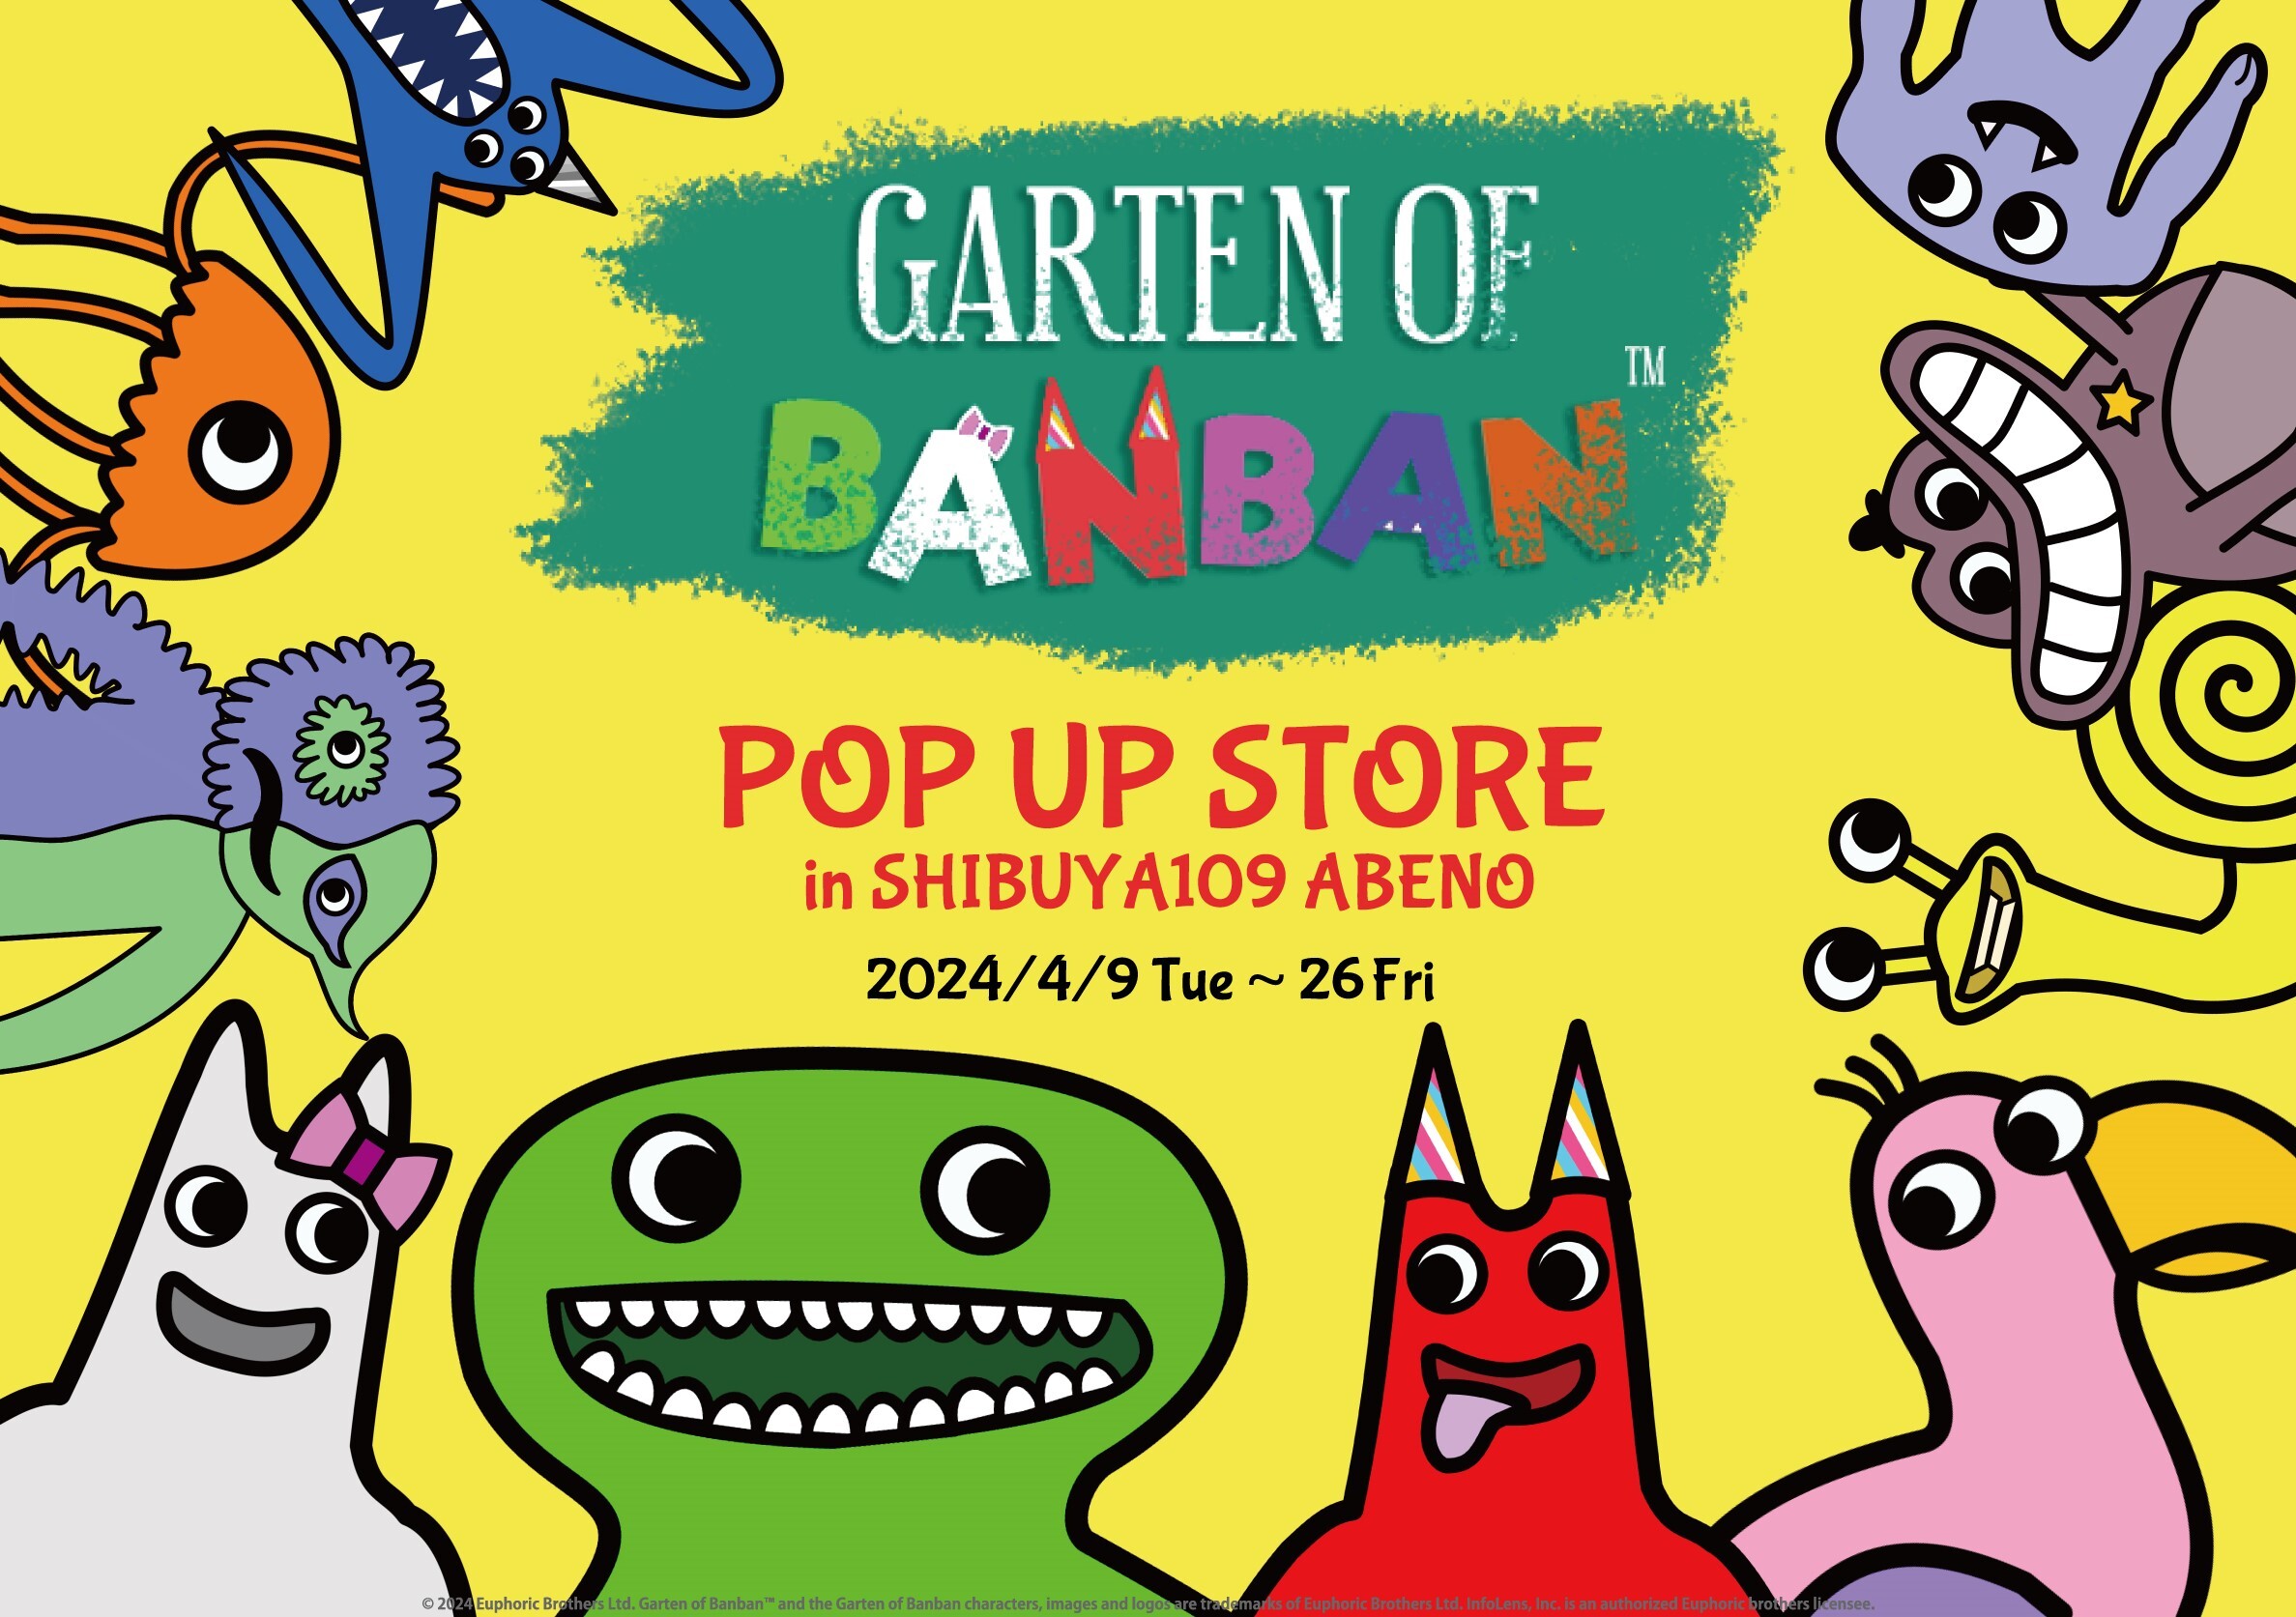 人気ホラーゲーム「Garten of Banban」
関西初の公式POP UP STOREが
SHIBUYA109 ABENOで開催決定！